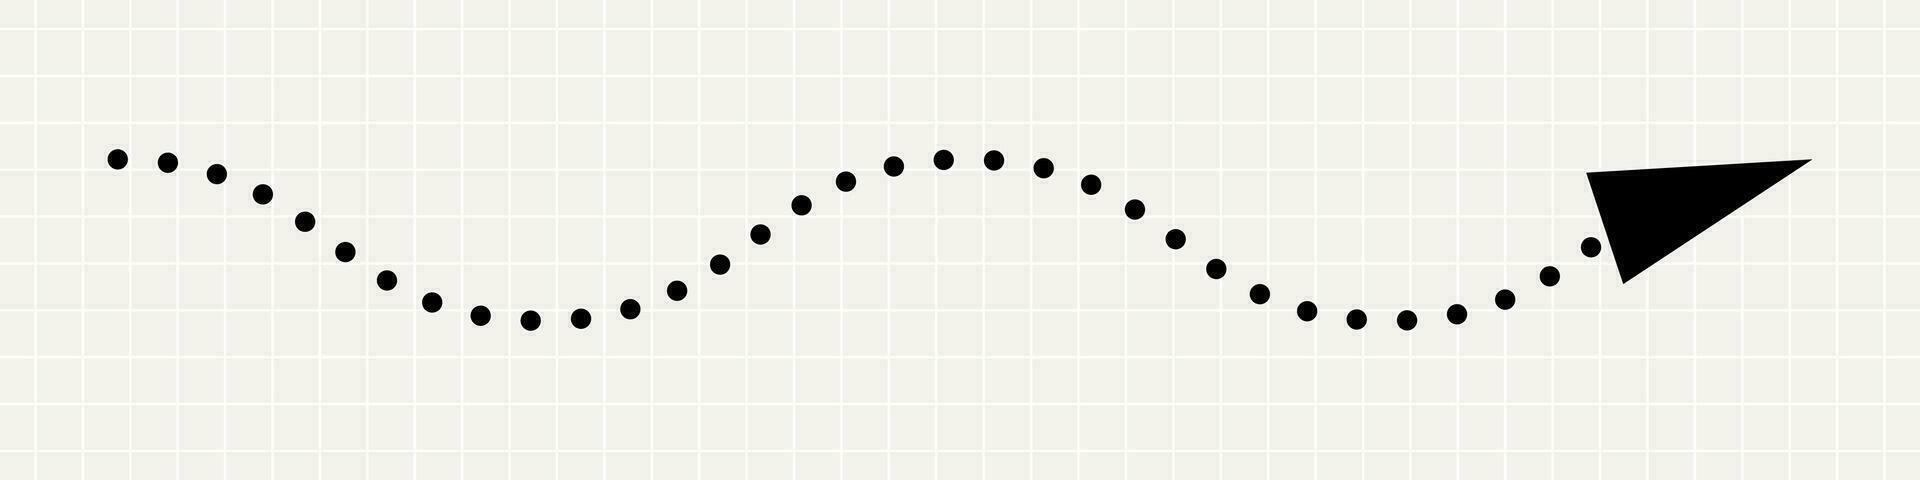 en tunn, böjd svart pil pekande till de höger. en minimalistisk lekfull pekare tillverkad av prickar på en anteckningsbok bakgrund. vektor